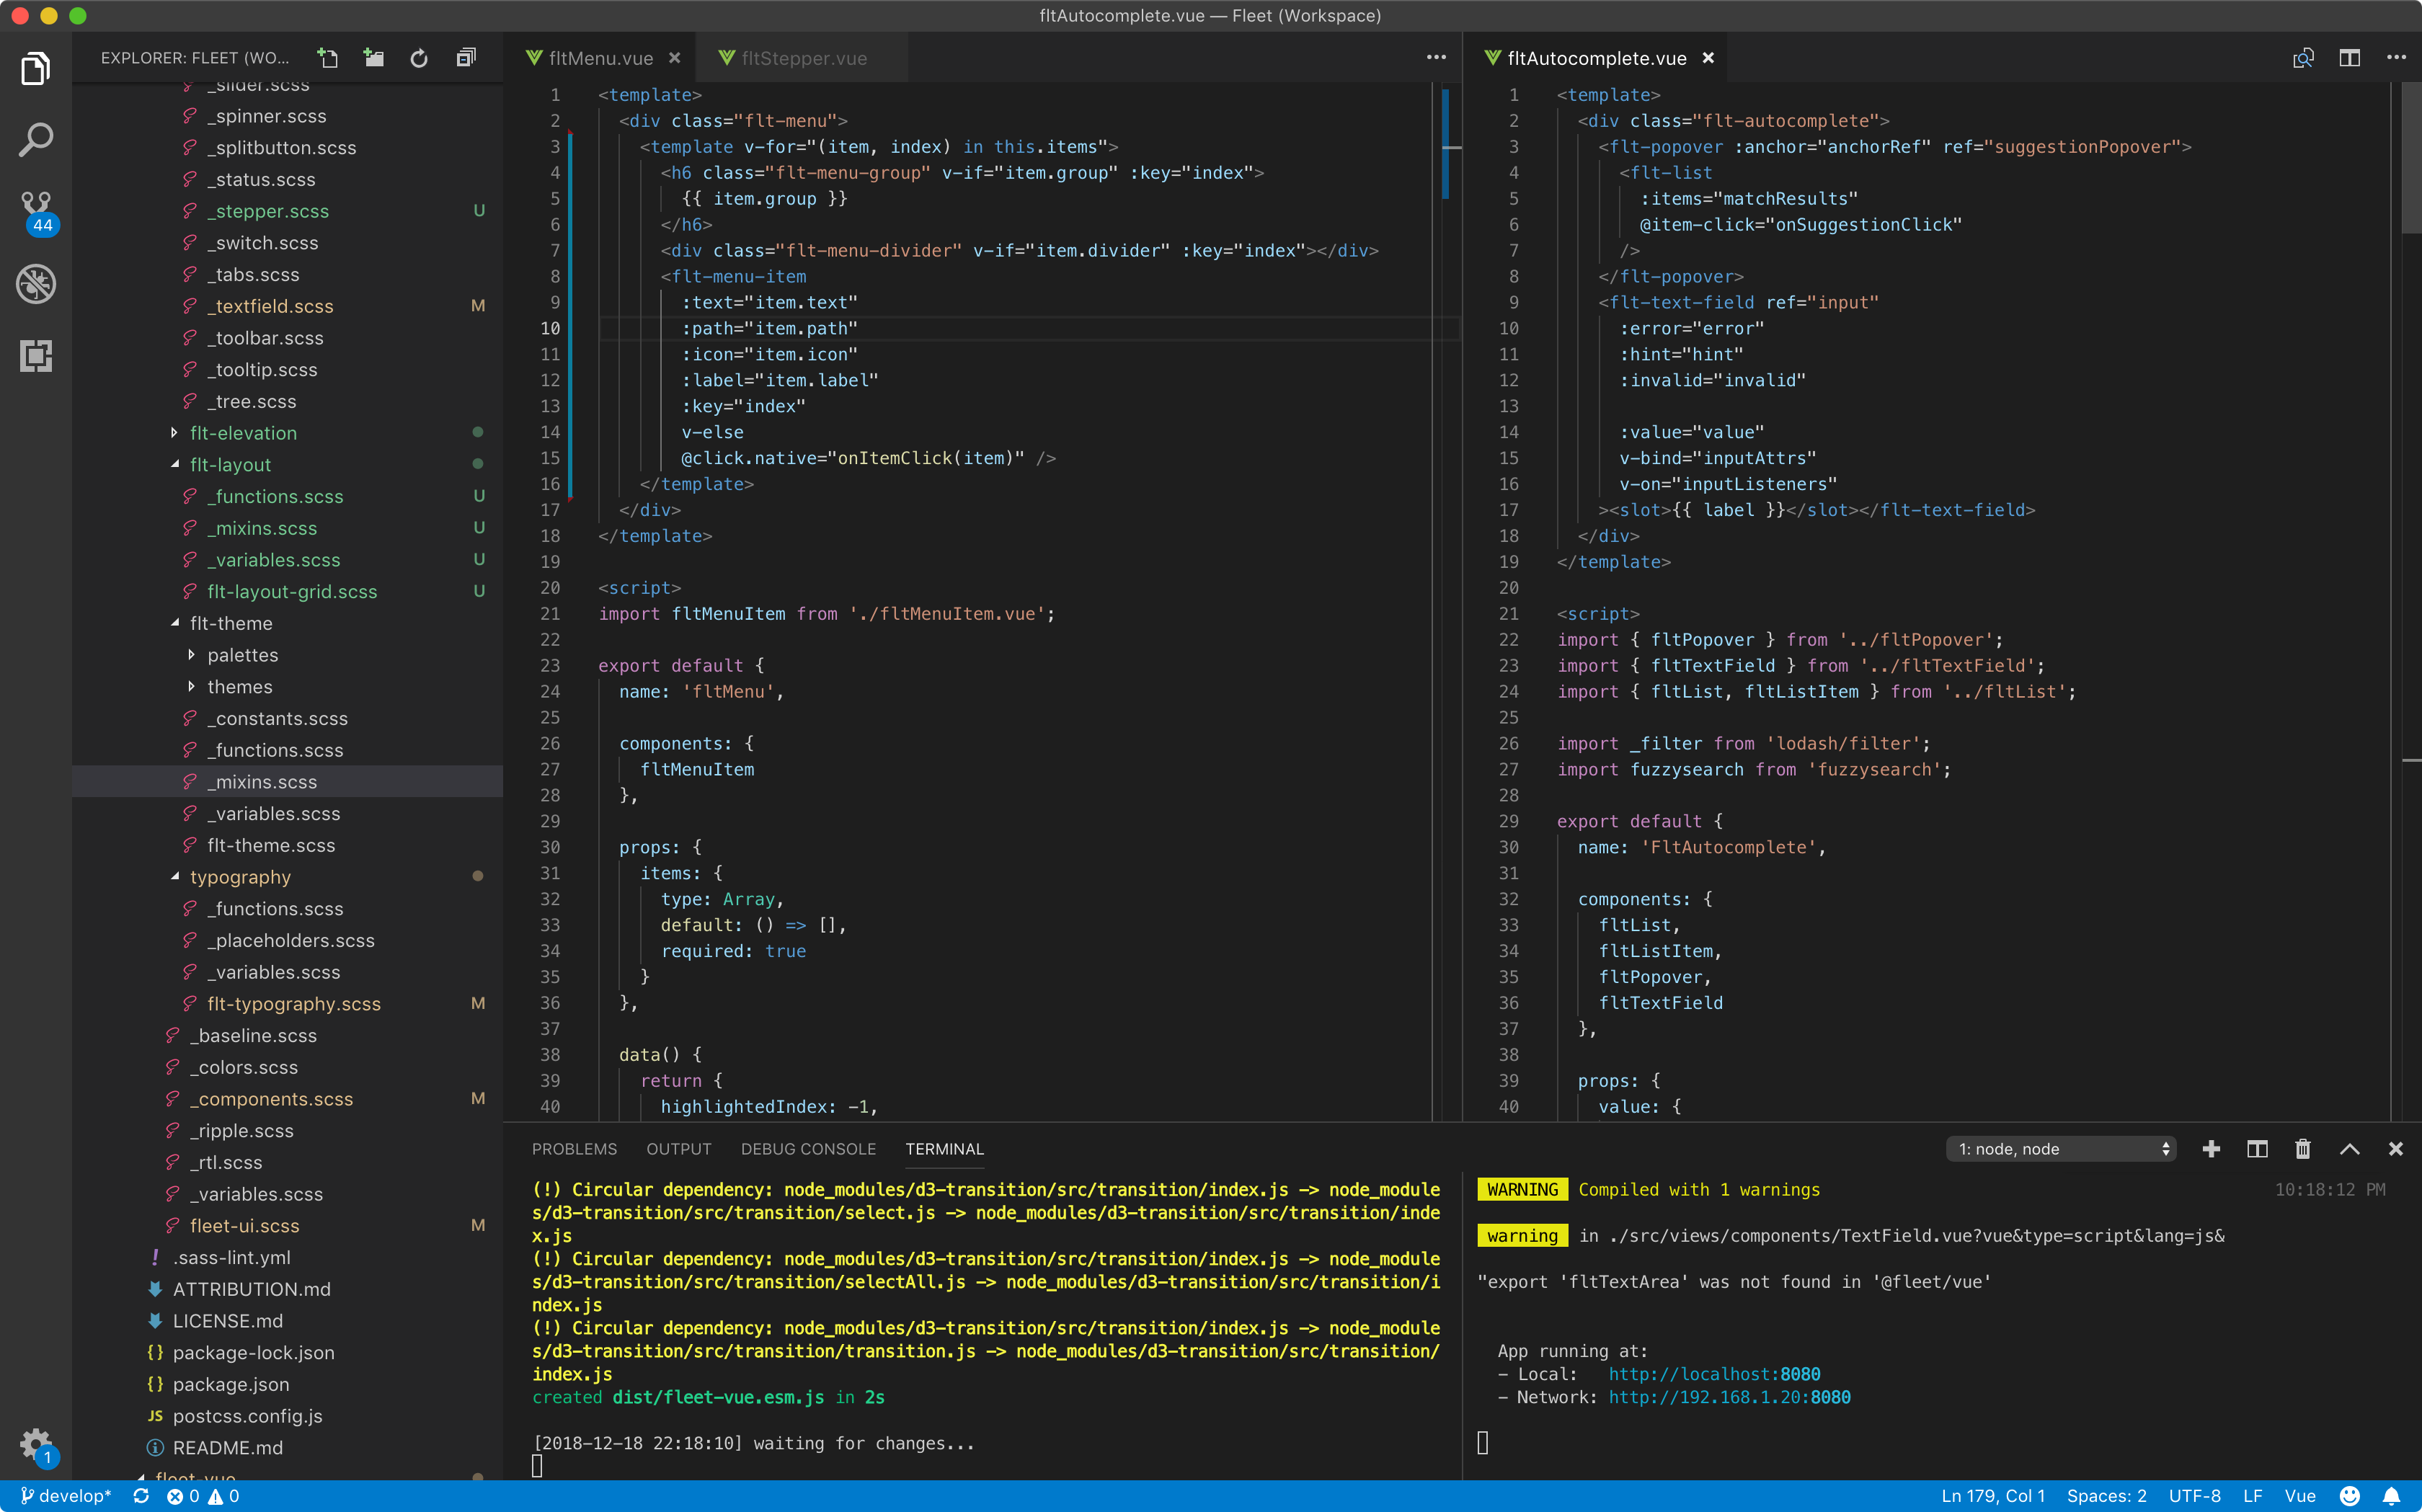 A screenshot of Visual Studio Code, showing Fleet's Vue code